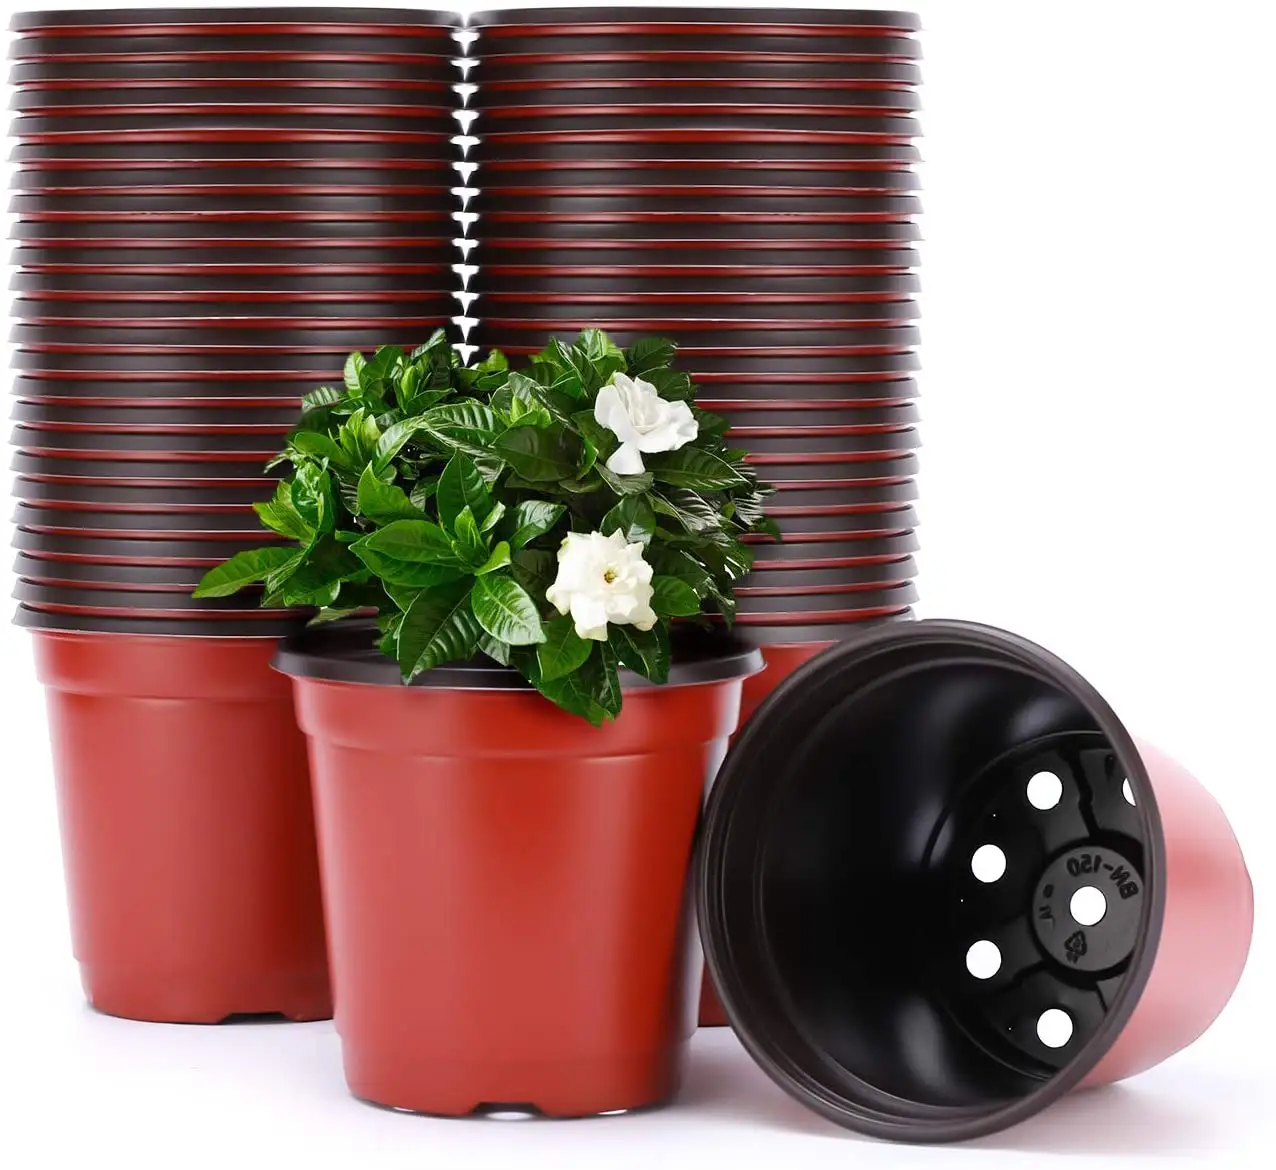 H477 Wholesales 여러 크기 식물 보육 냄비 홈 정원 이식 플라스틱 꽃 냄비